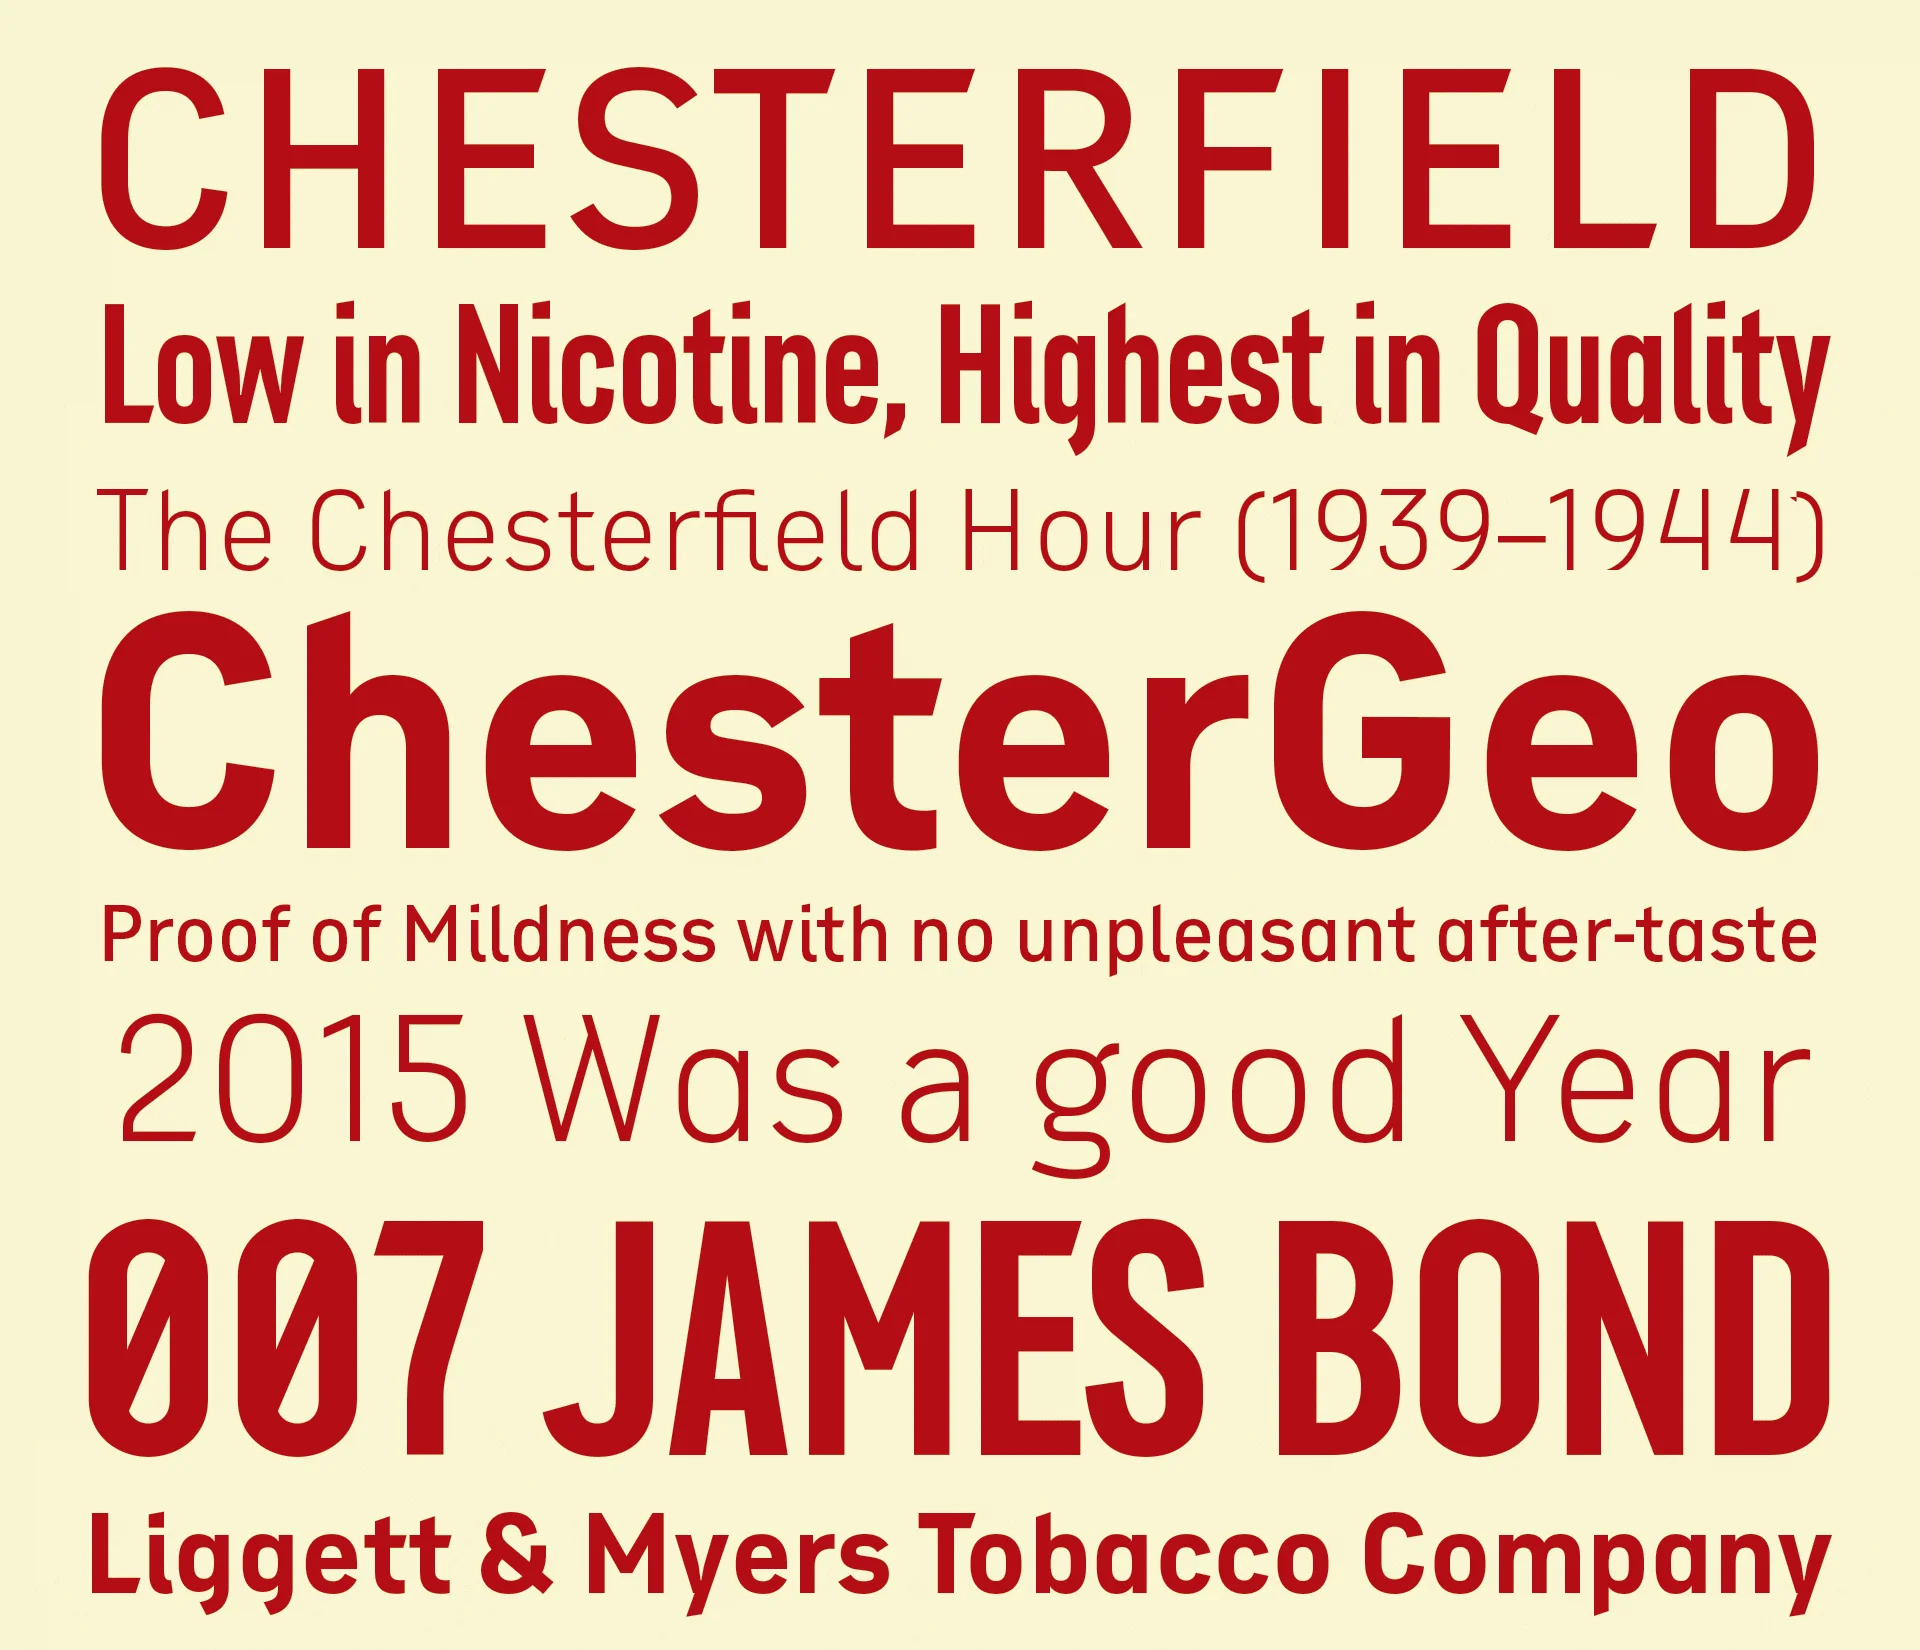 ChesterGeo en uso con frases en inglés relacionadas con la marca Chesterfield